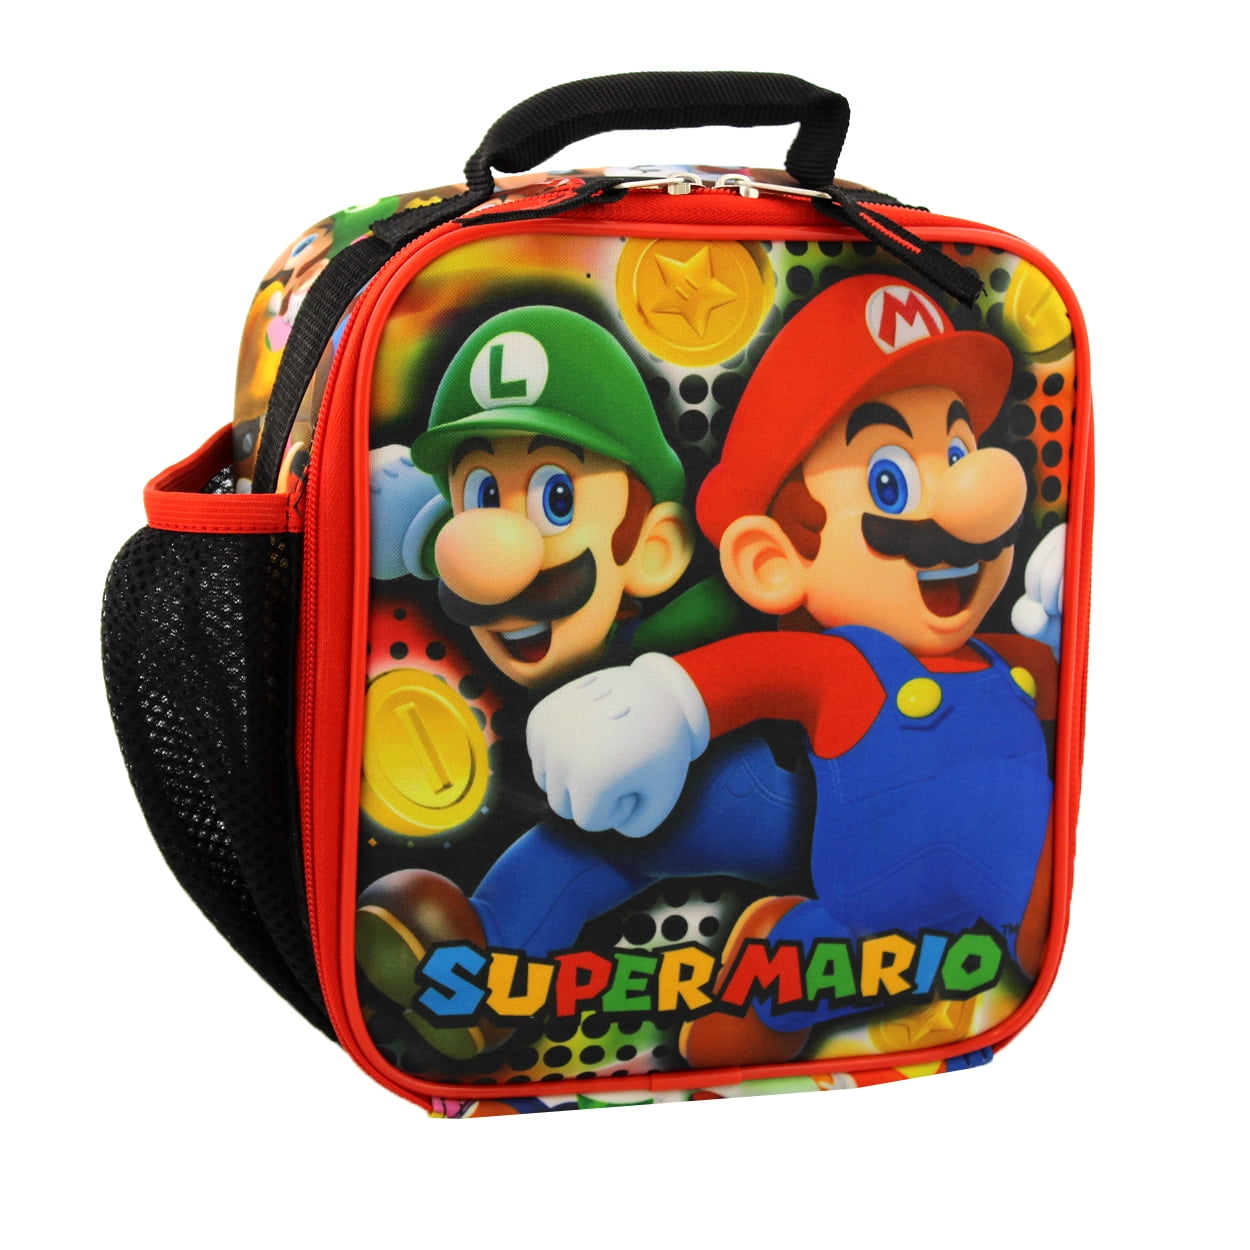 Super Mario Bros lunchbox